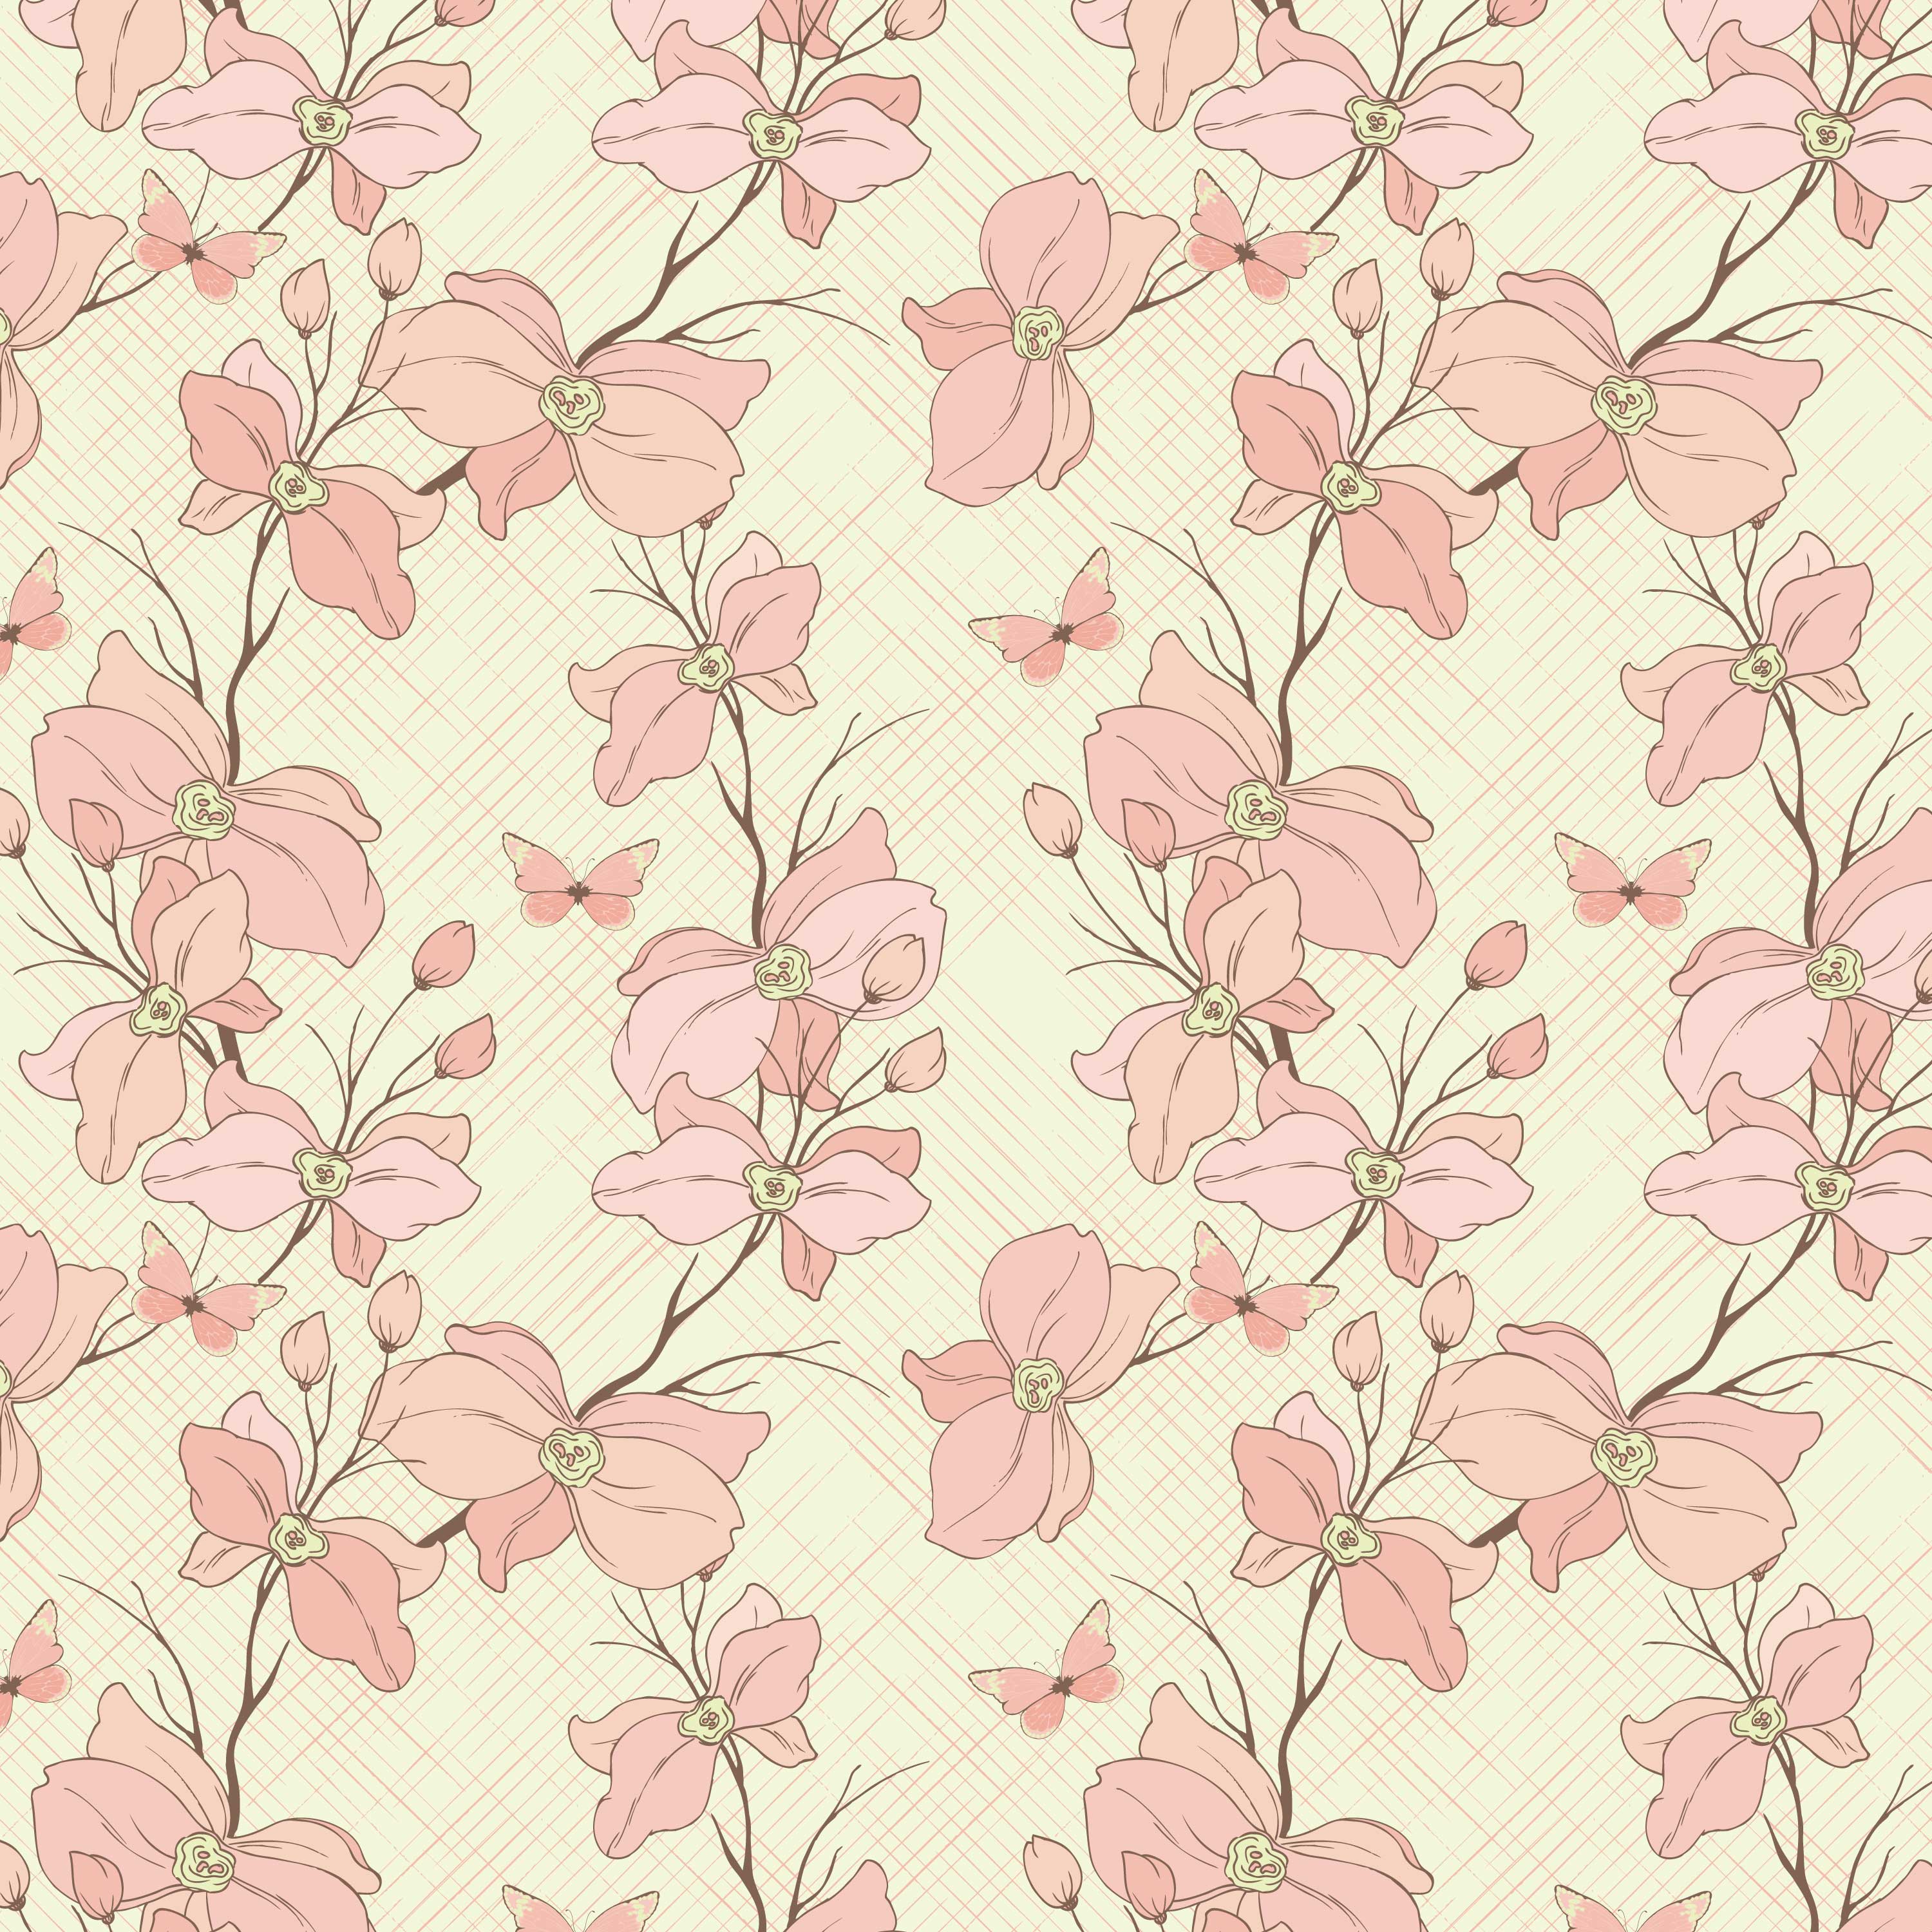 壁紙 背景イラスト 花の模様 柄 パターン No 330 ピンク つぼみ